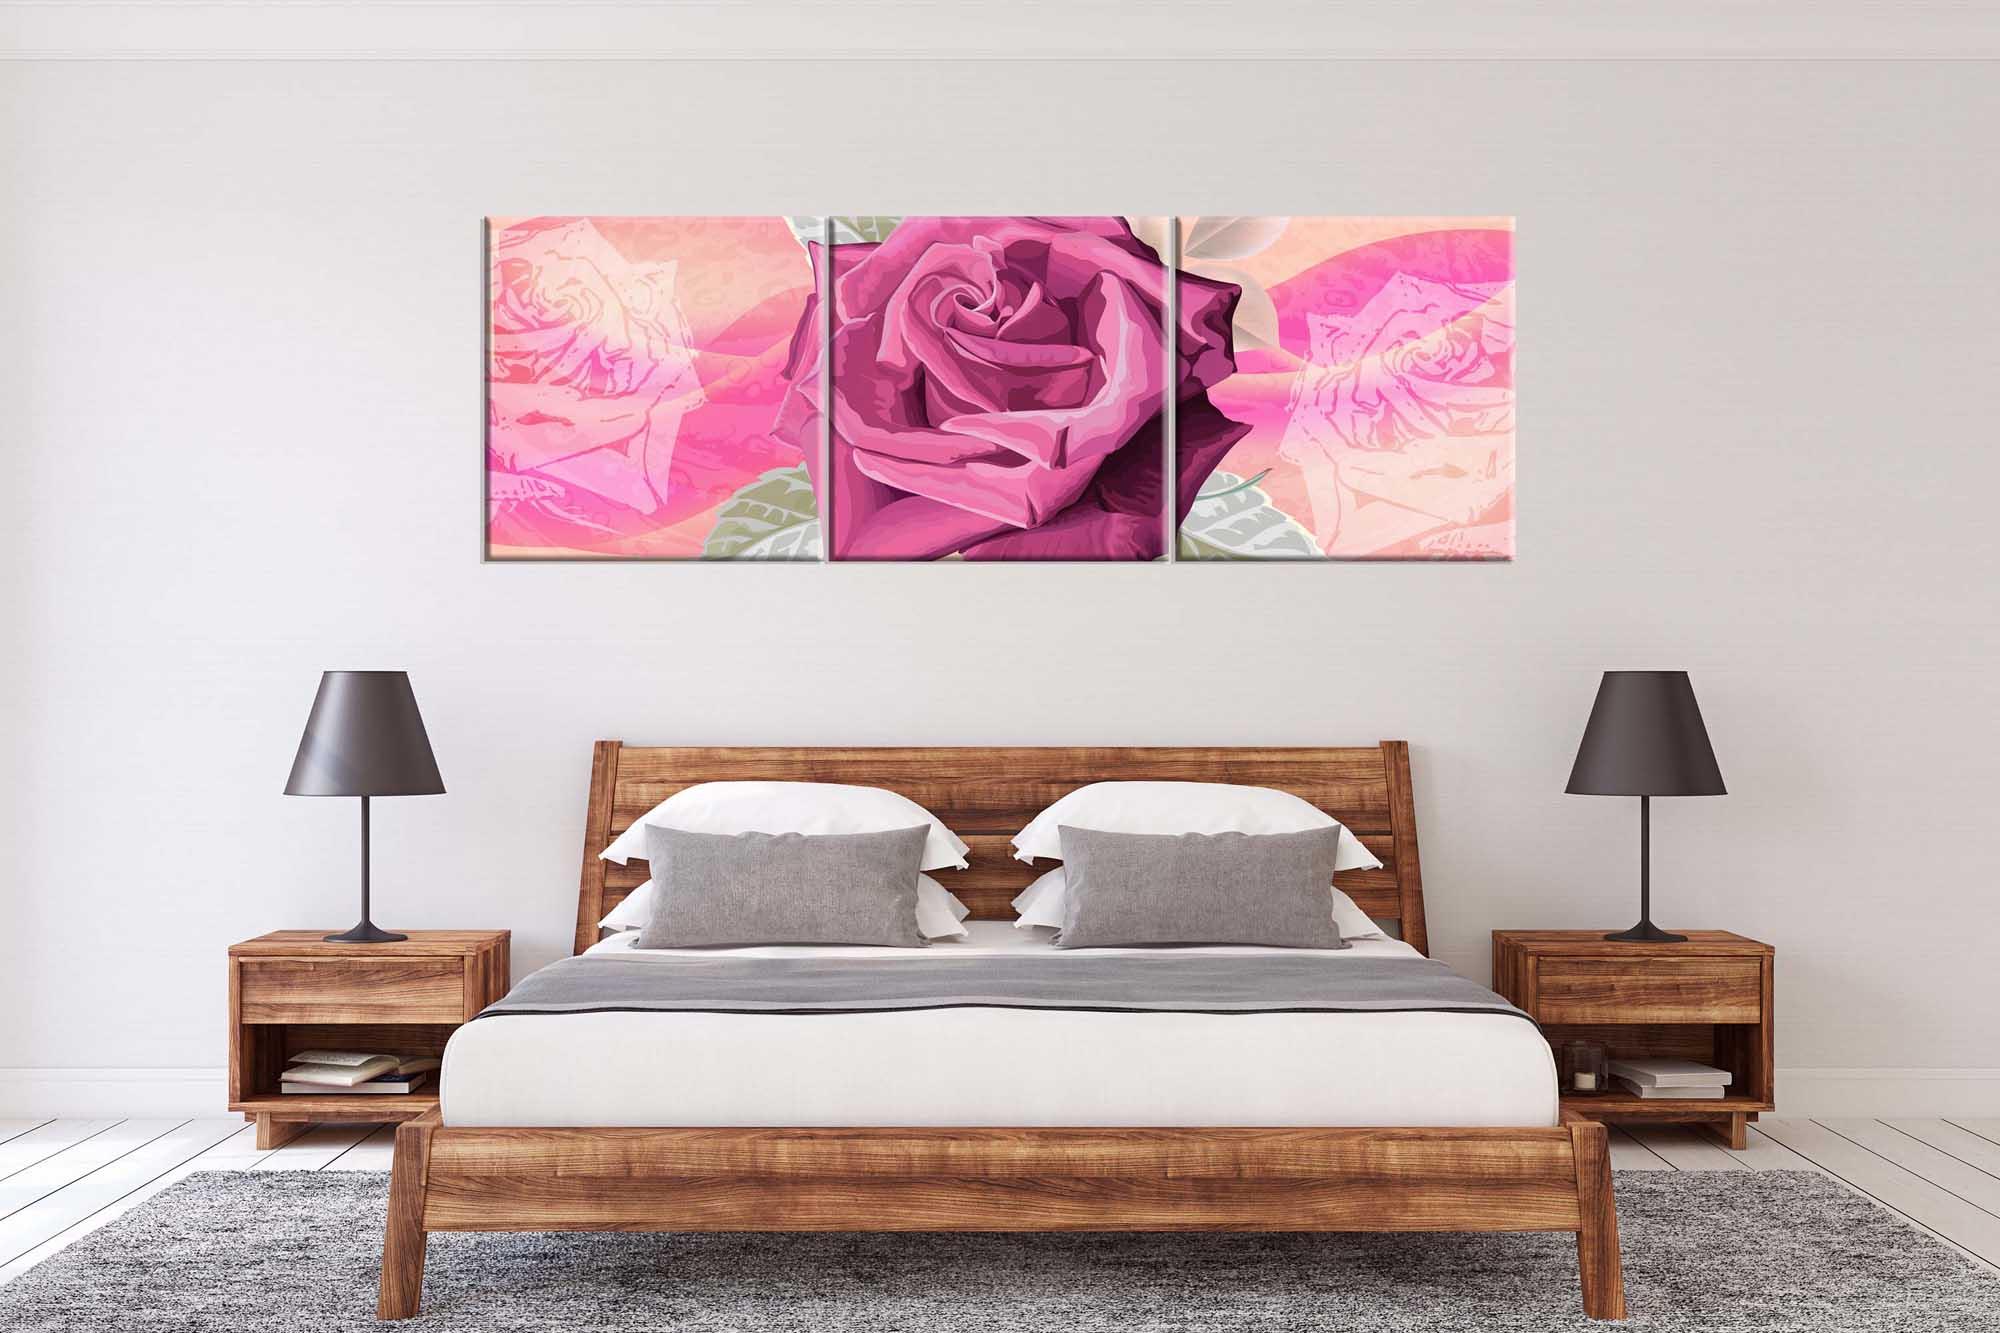 Moduļu bilde - skaista ziedoša roze